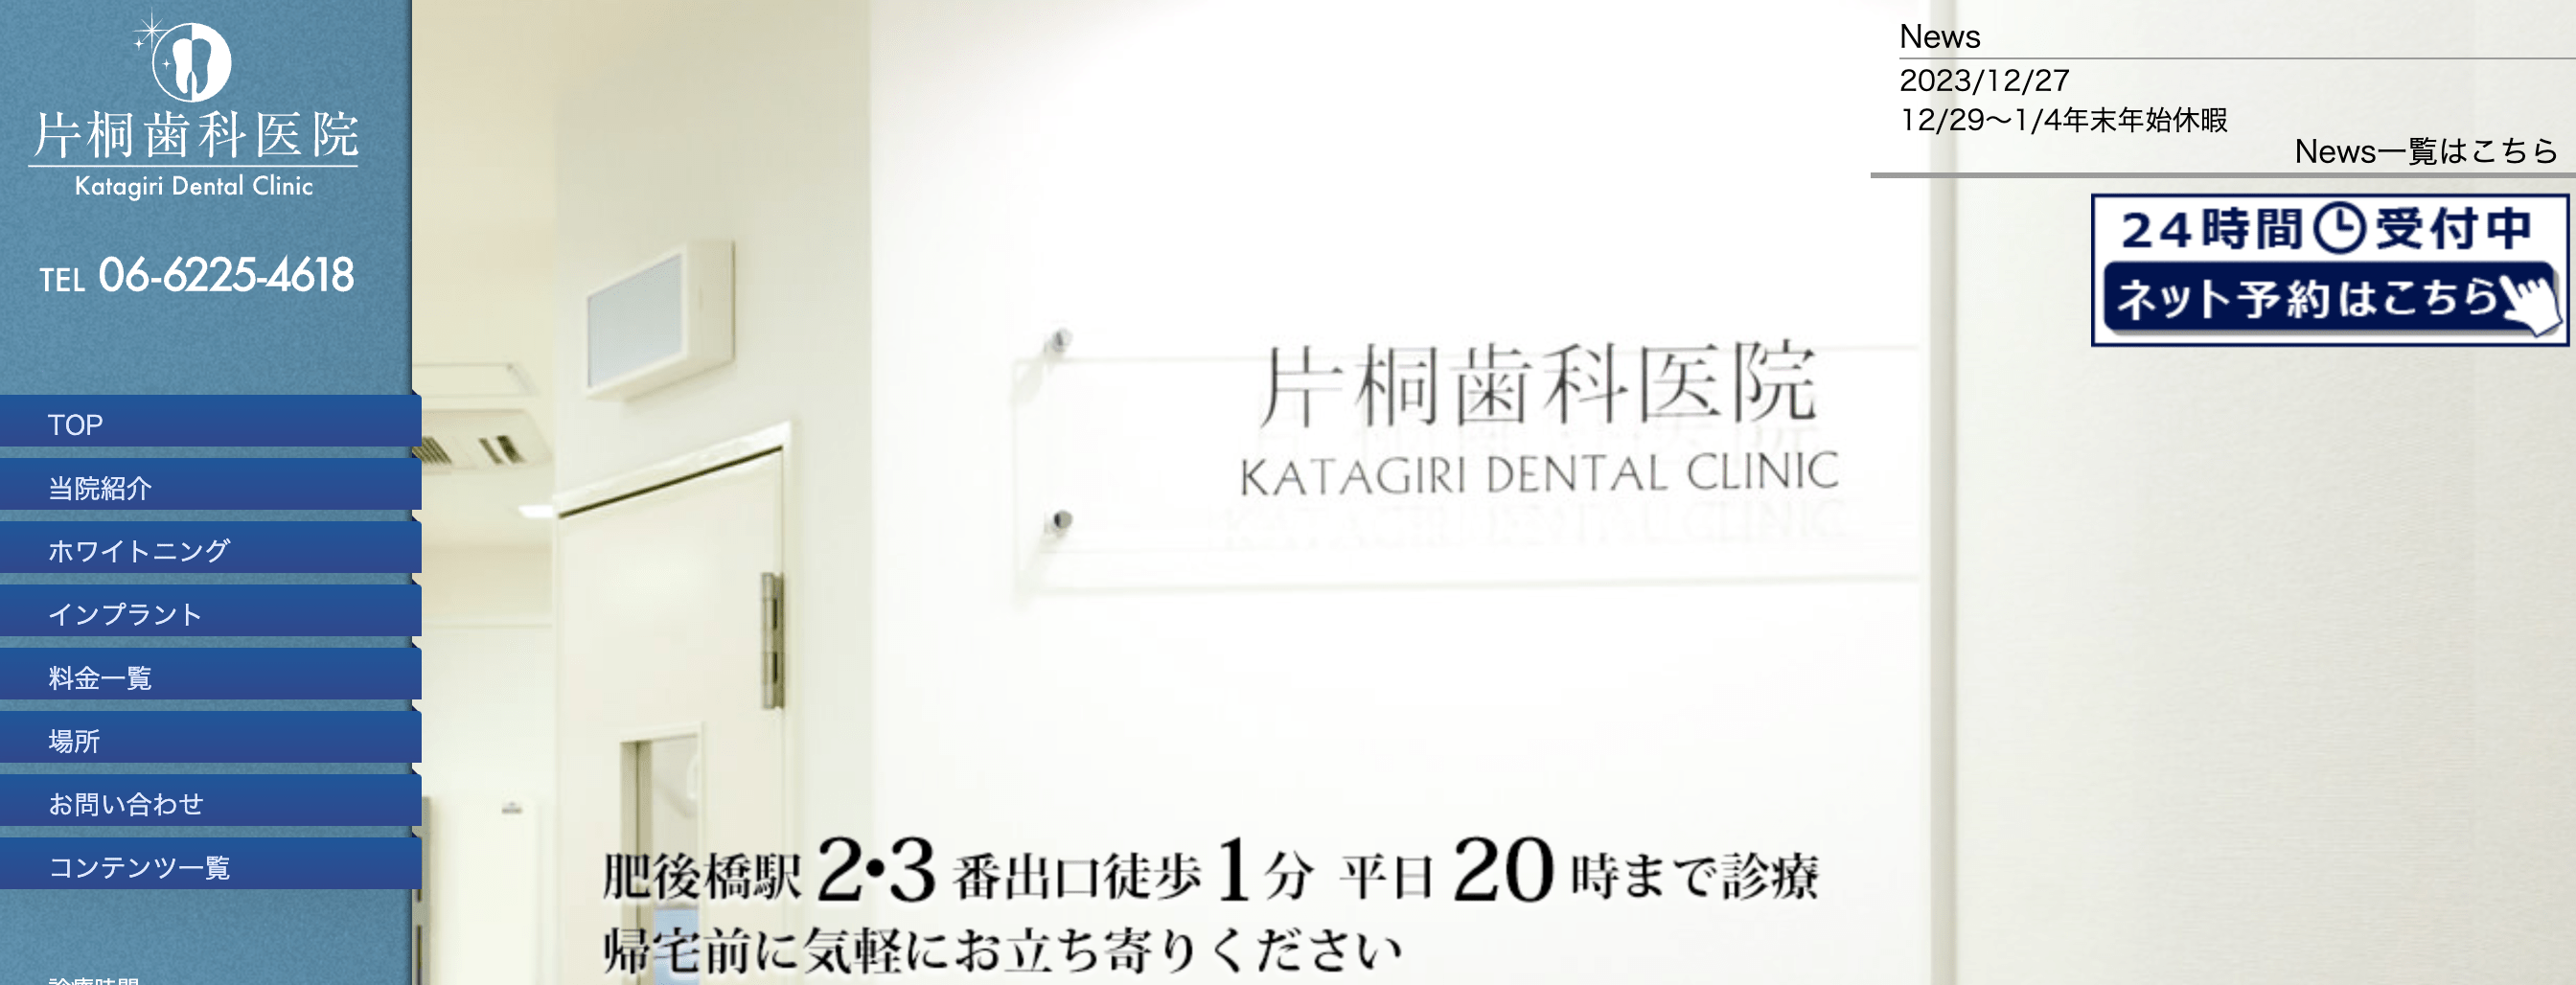 大阪市で評判のホワイトニングにおすすめの歯科クリニック10選 片桐歯科医院